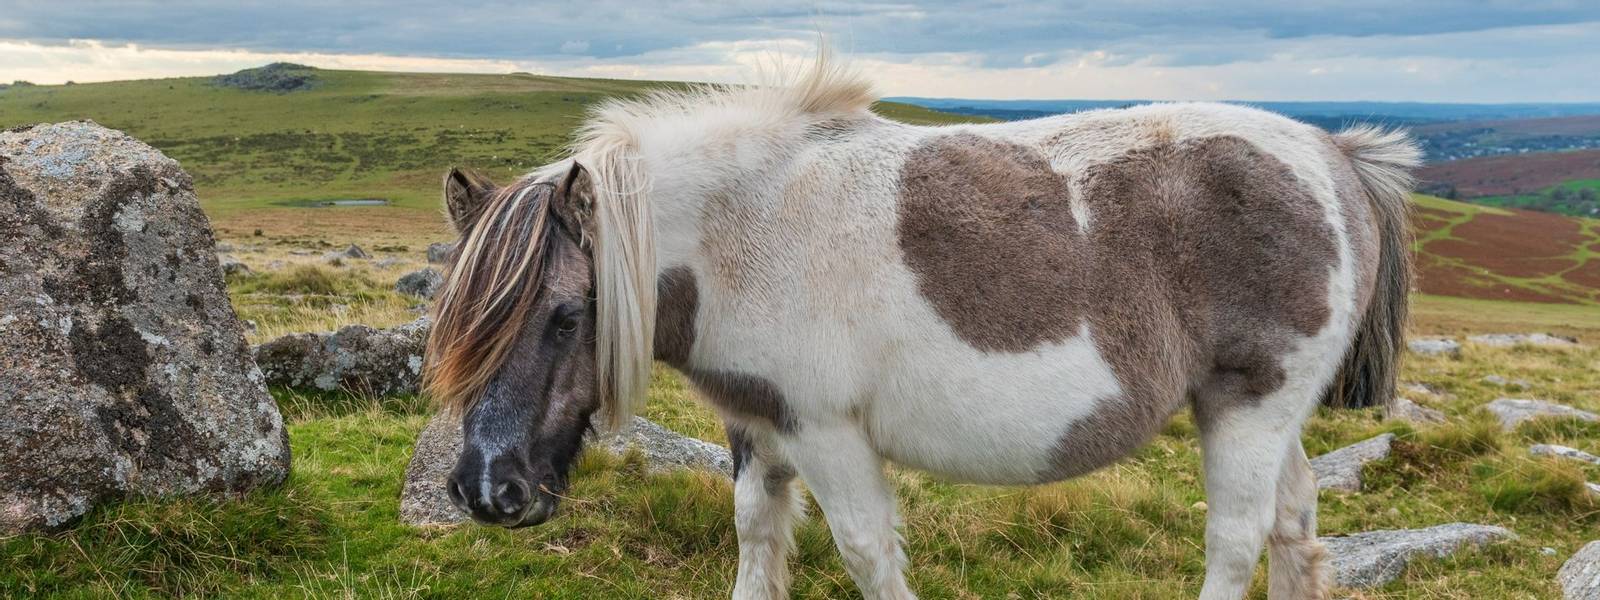 Dartmoor pony on Great Staple Tor, Dartmoor